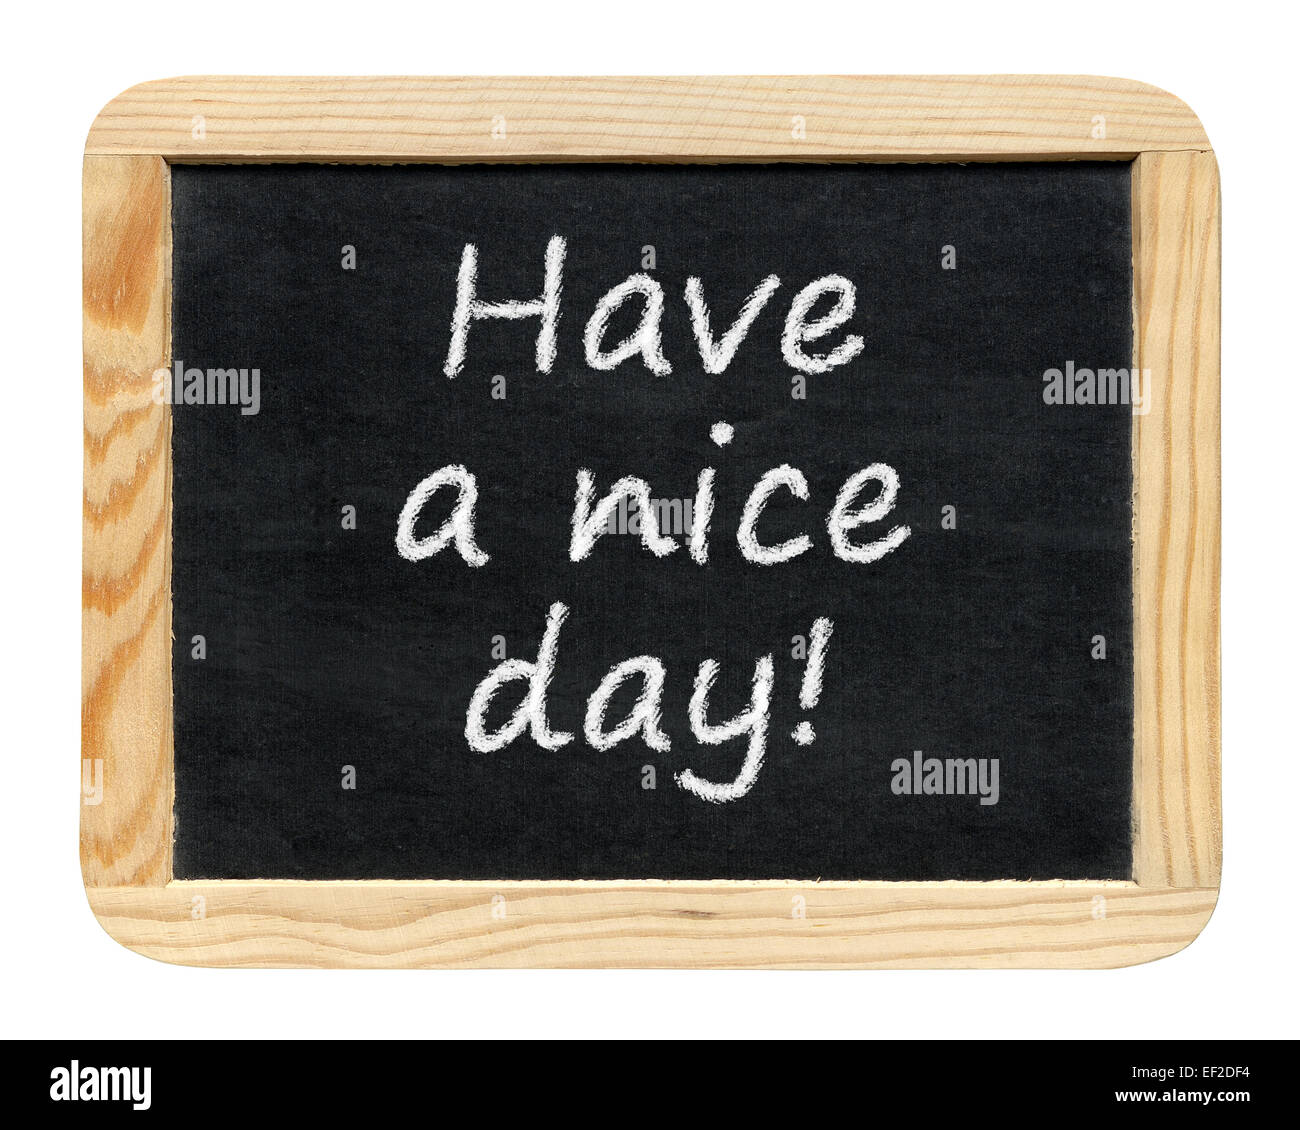 Tafel mit noch einen schönen Tag! Satz isoliert auf weißem Hintergrund Stockfoto